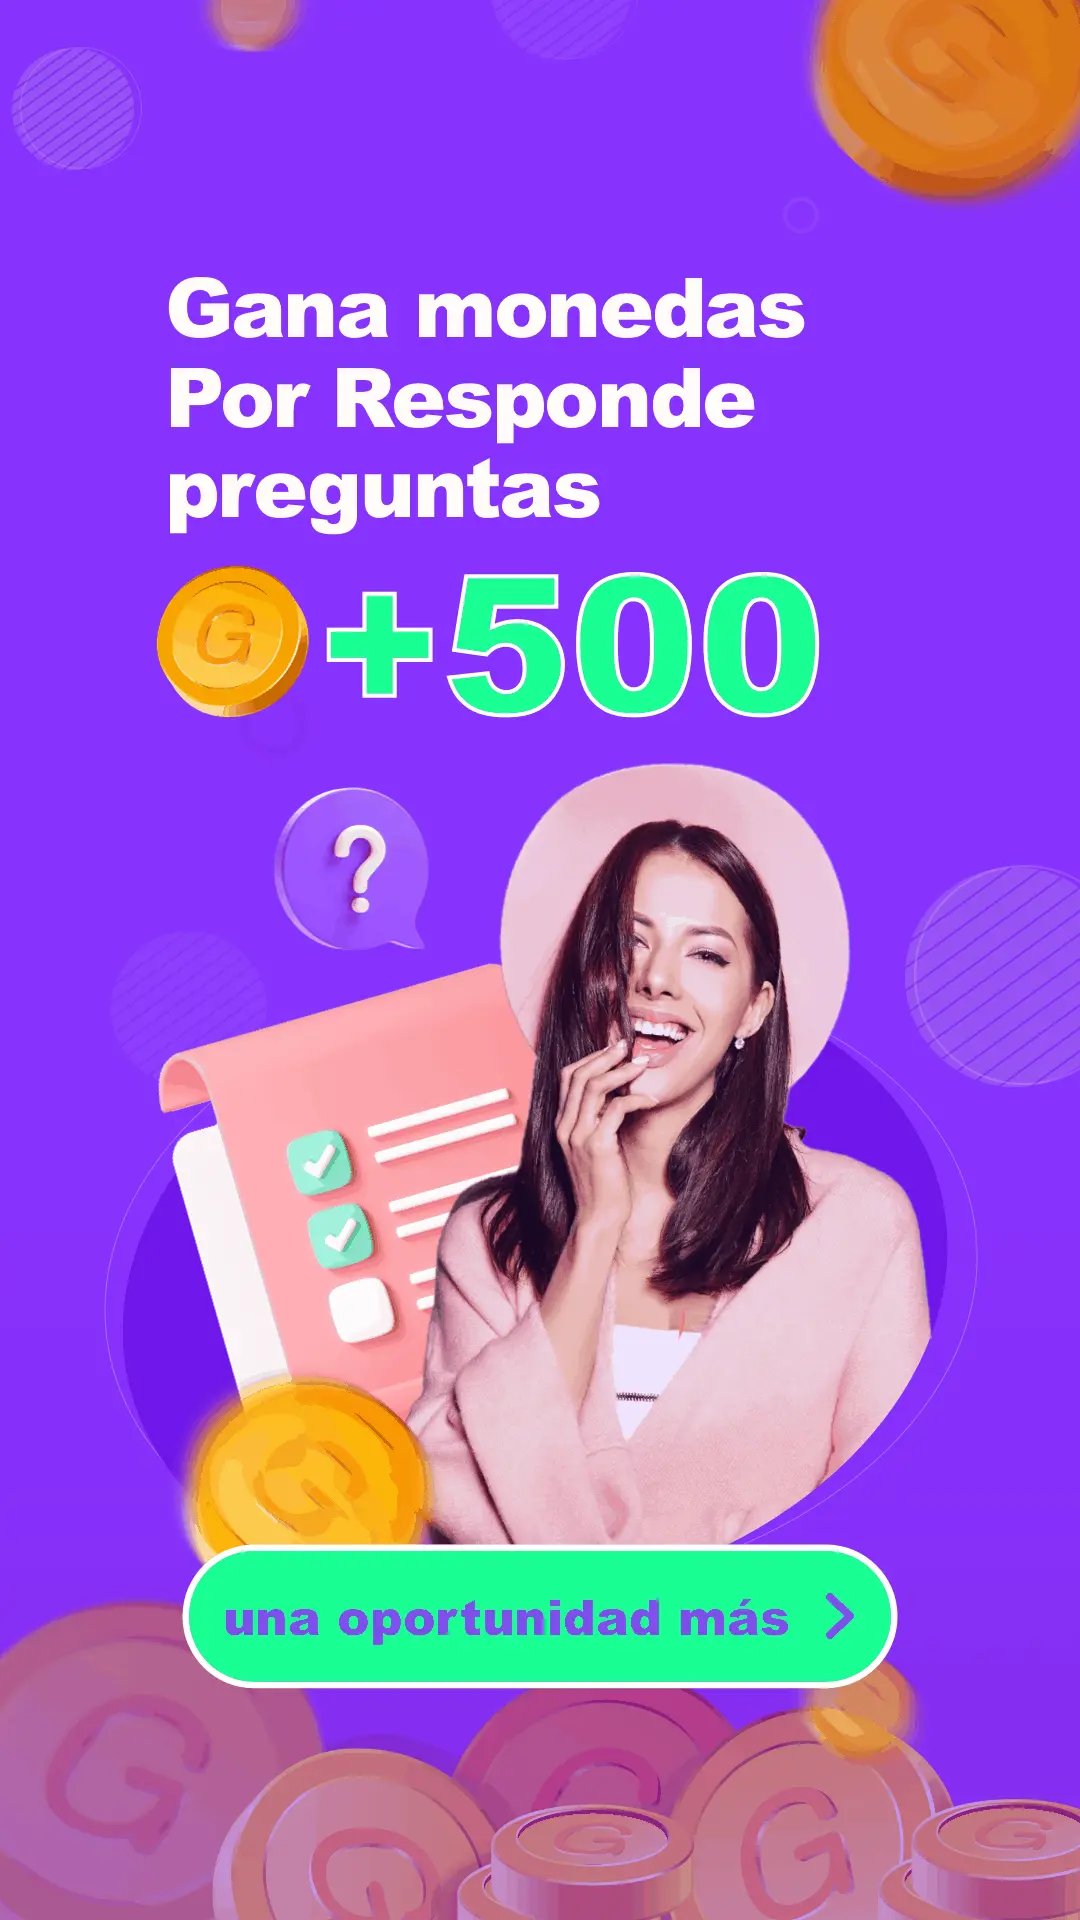 evento: gana 500 monedas por responde preguntas - livu español oficial